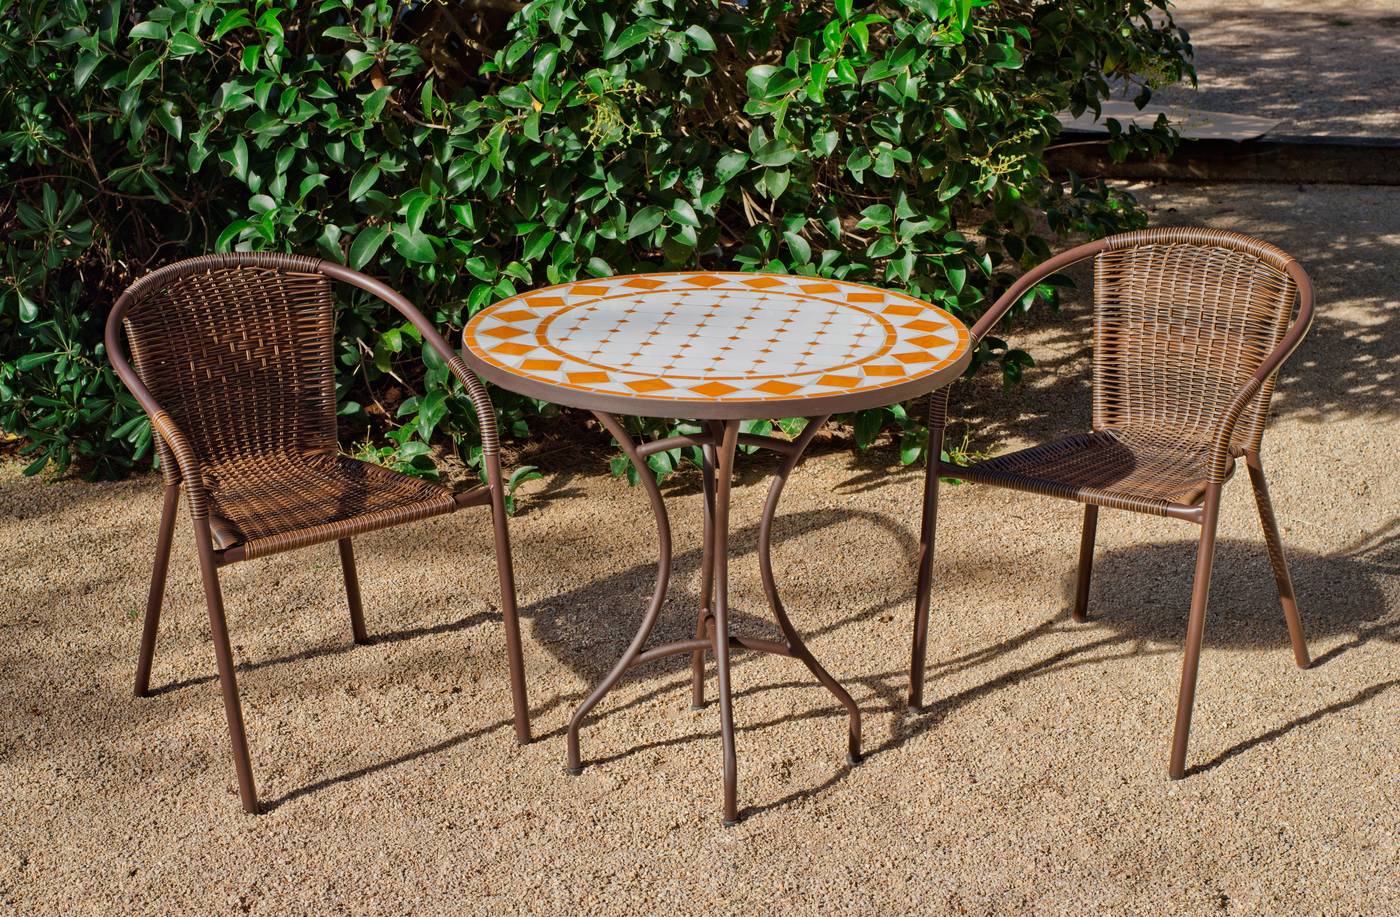 Conjunto para jardín y terraza de forja: 1 mesa con panel mosaico + 4 sillones de wicker reforzado